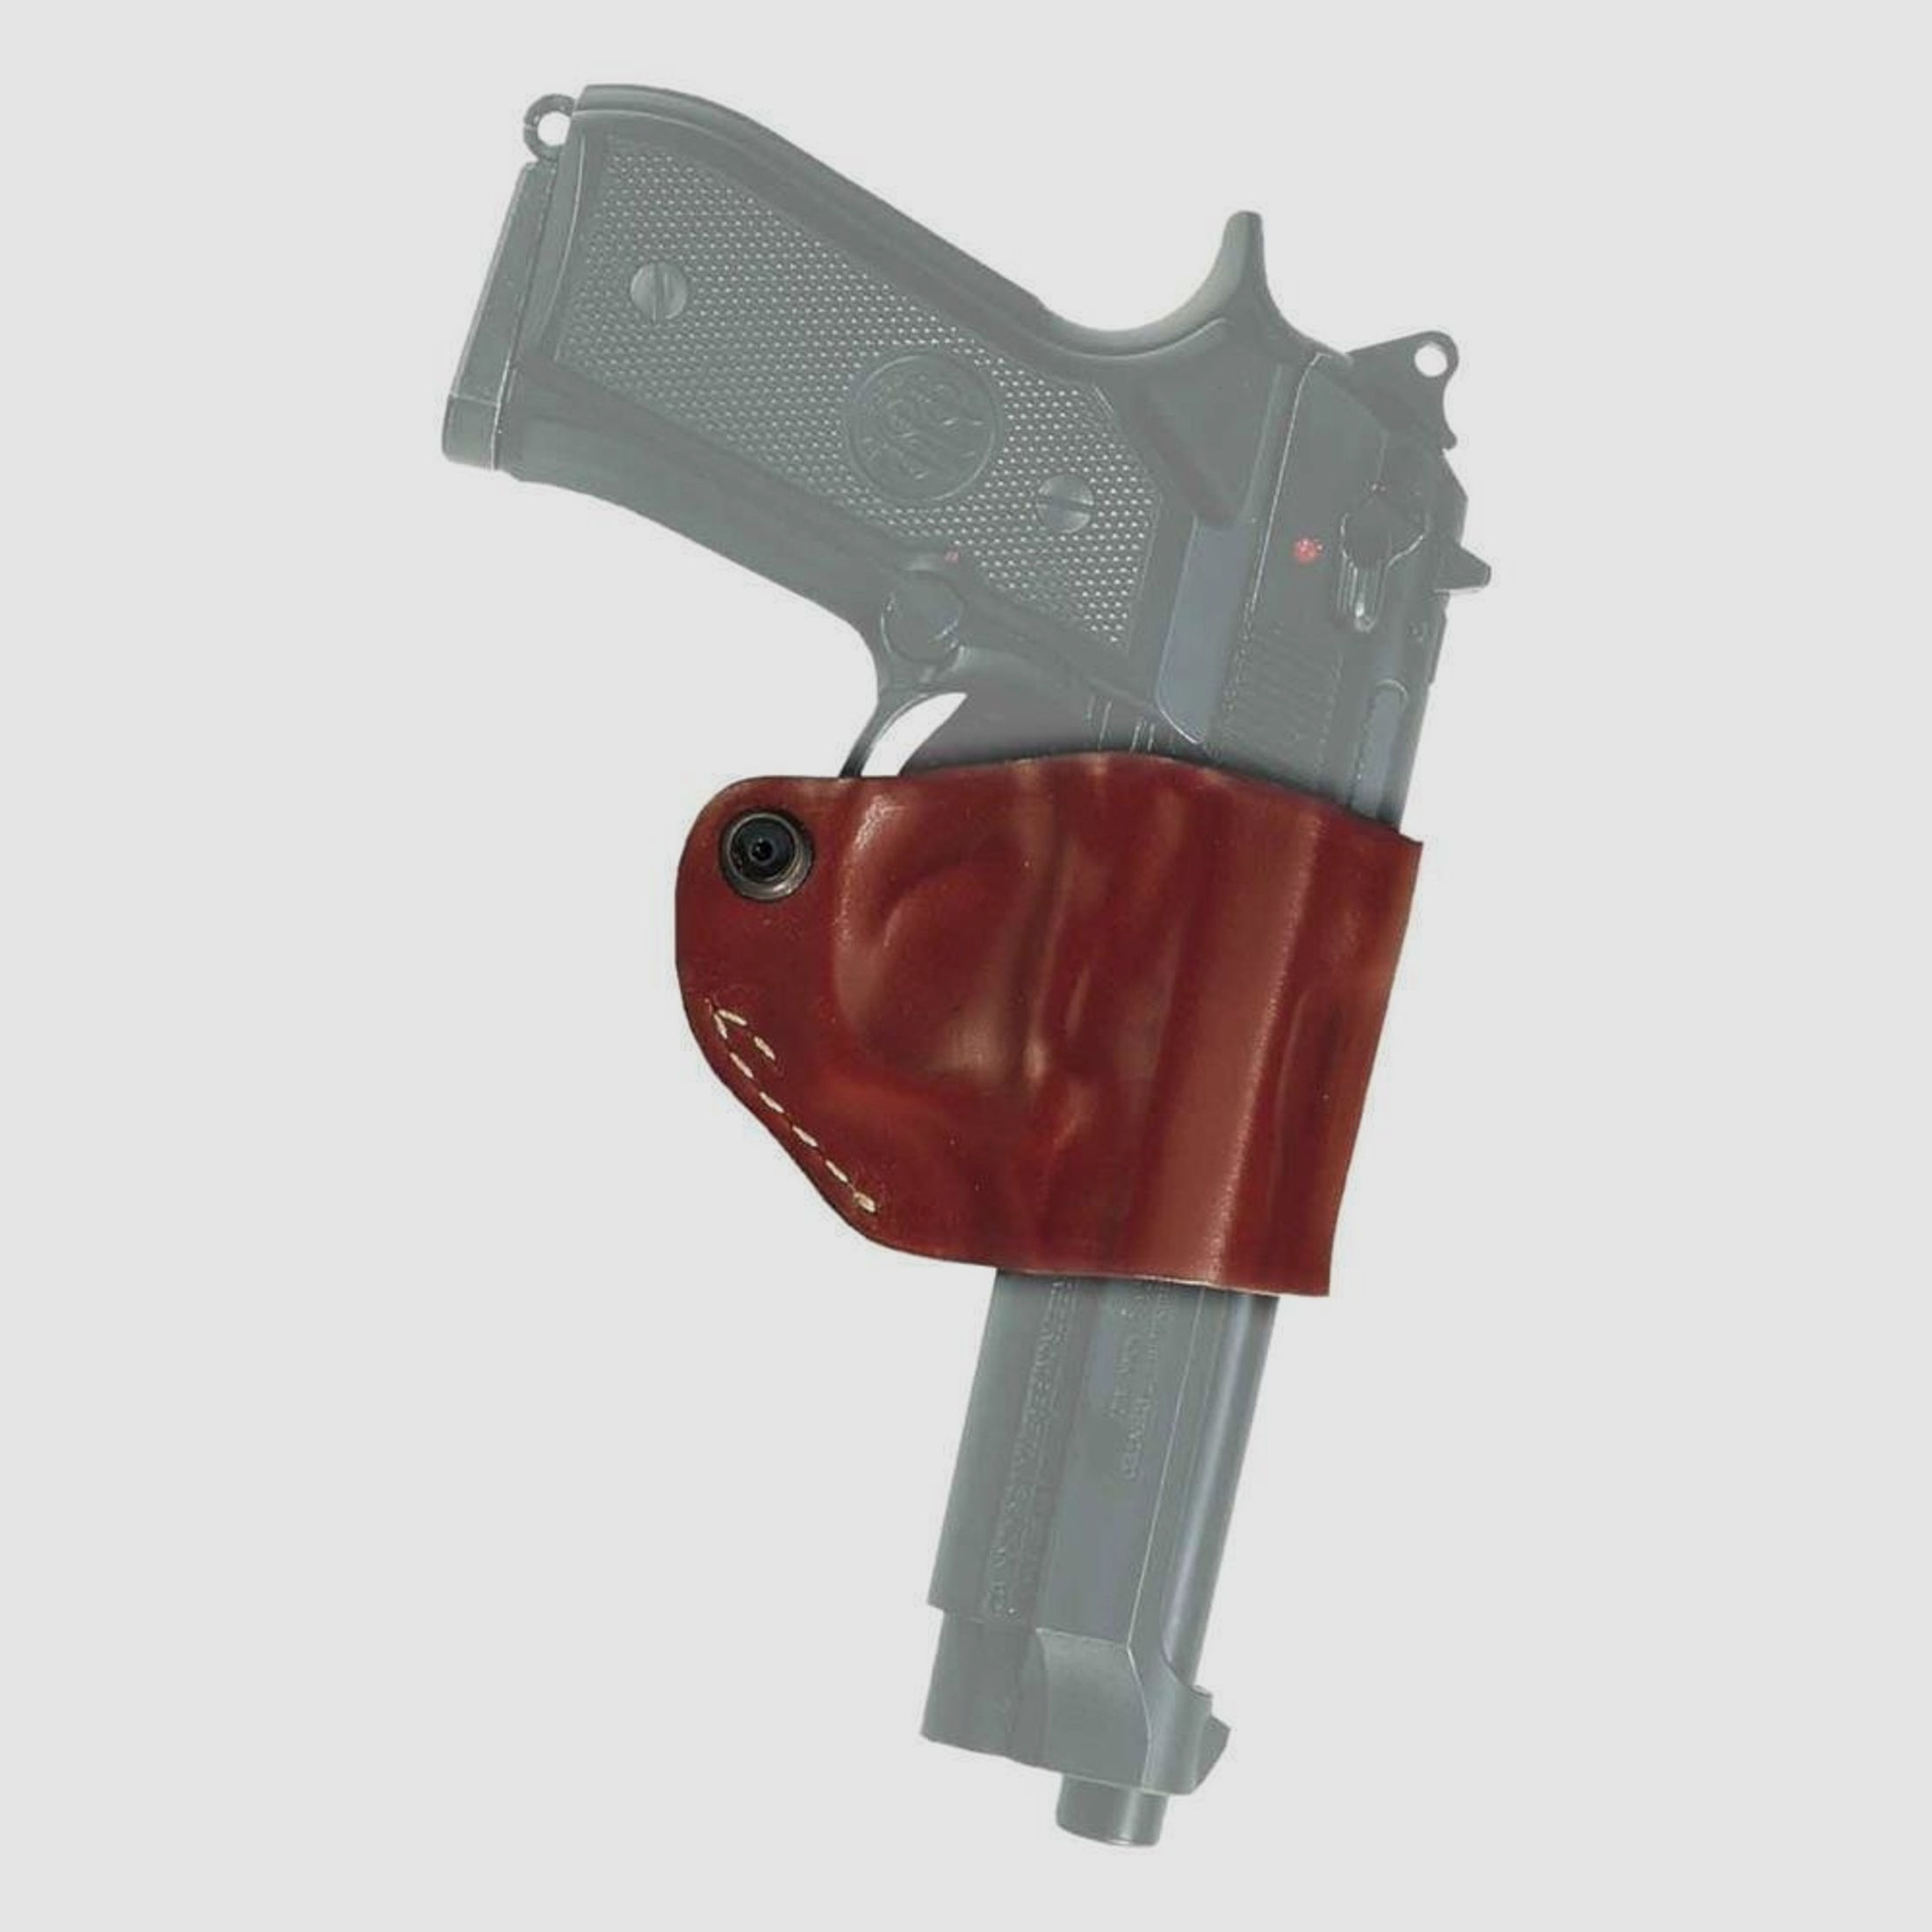 Gürtelholster "Yaqui Slide" Glock 17/17X/19/19X/26/29/30/34/35/36/37/38/45, Walther P22/P22Q Schwarz Rechtshänder